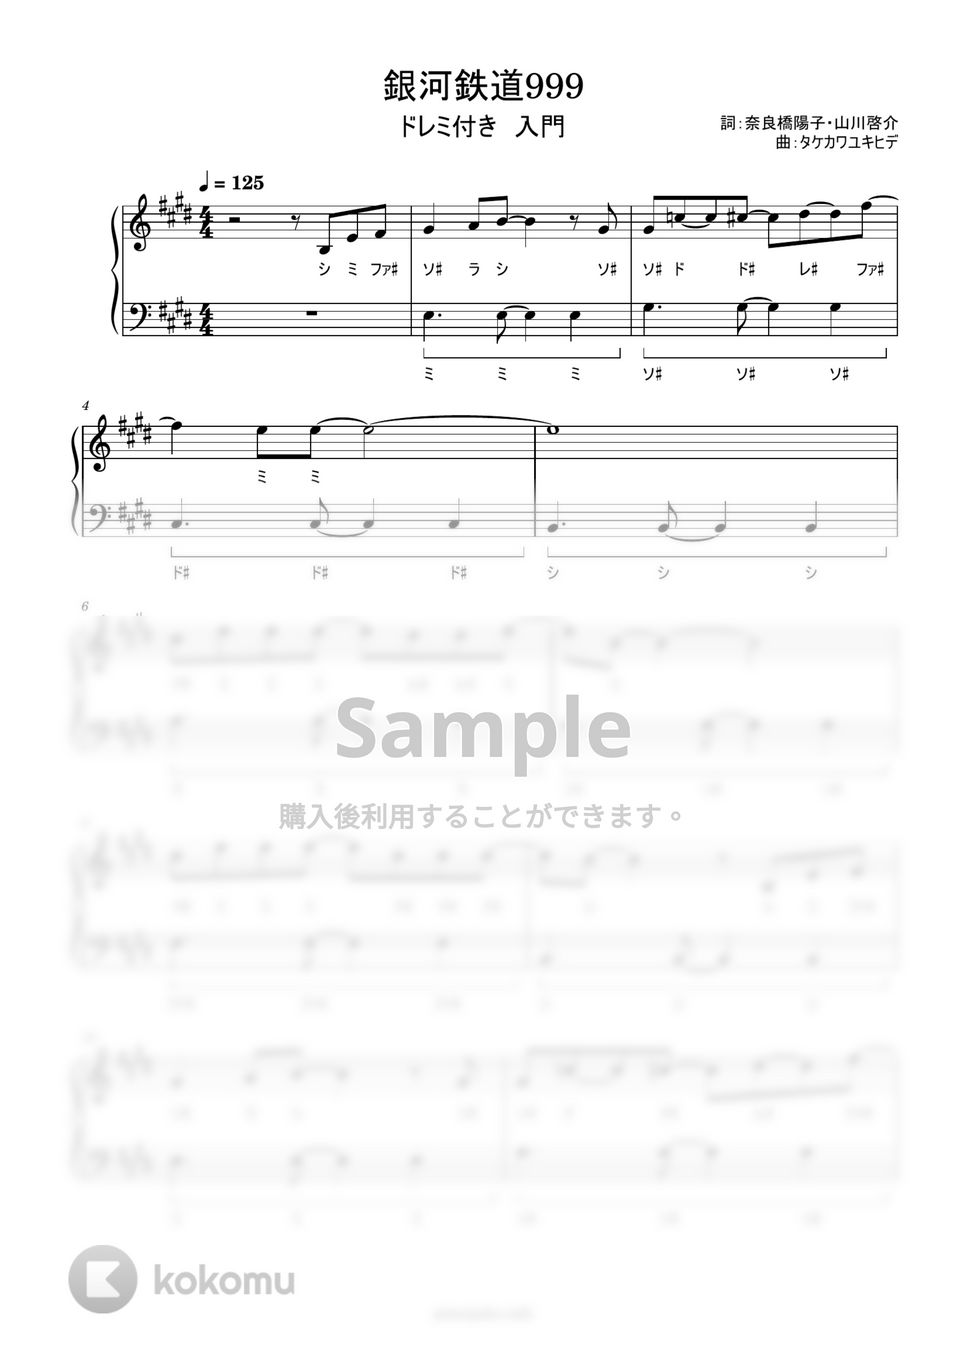 ゴダイゴ - 銀河鉄道999 (ドレミ付き簡単楽譜) by ピアノ塾